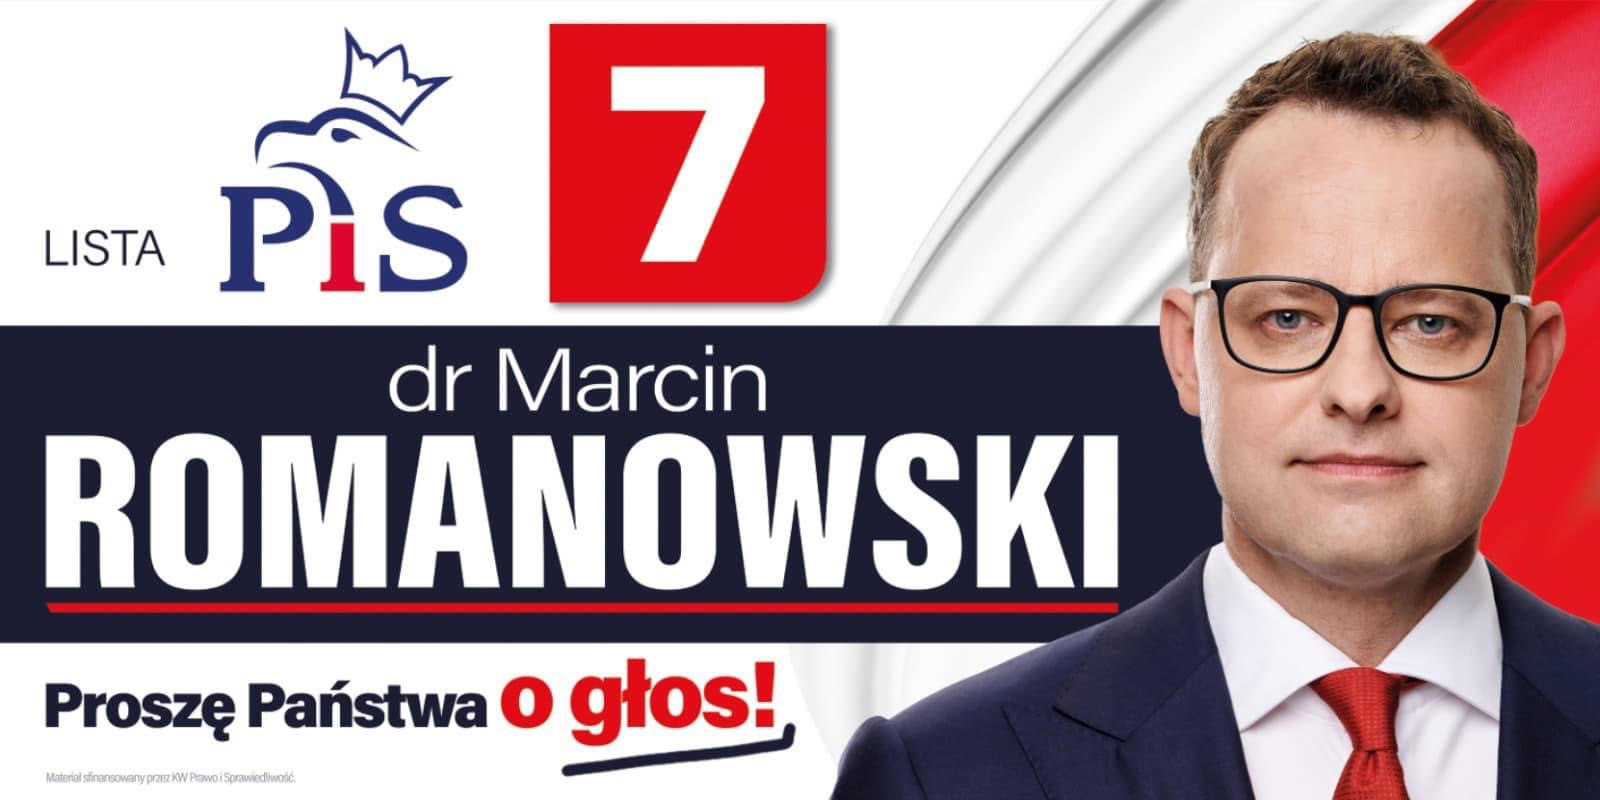 zdj do artykulu Marcin Romanowski, czyli największy wróg lewicy z poparciem partii Marka Jurka.